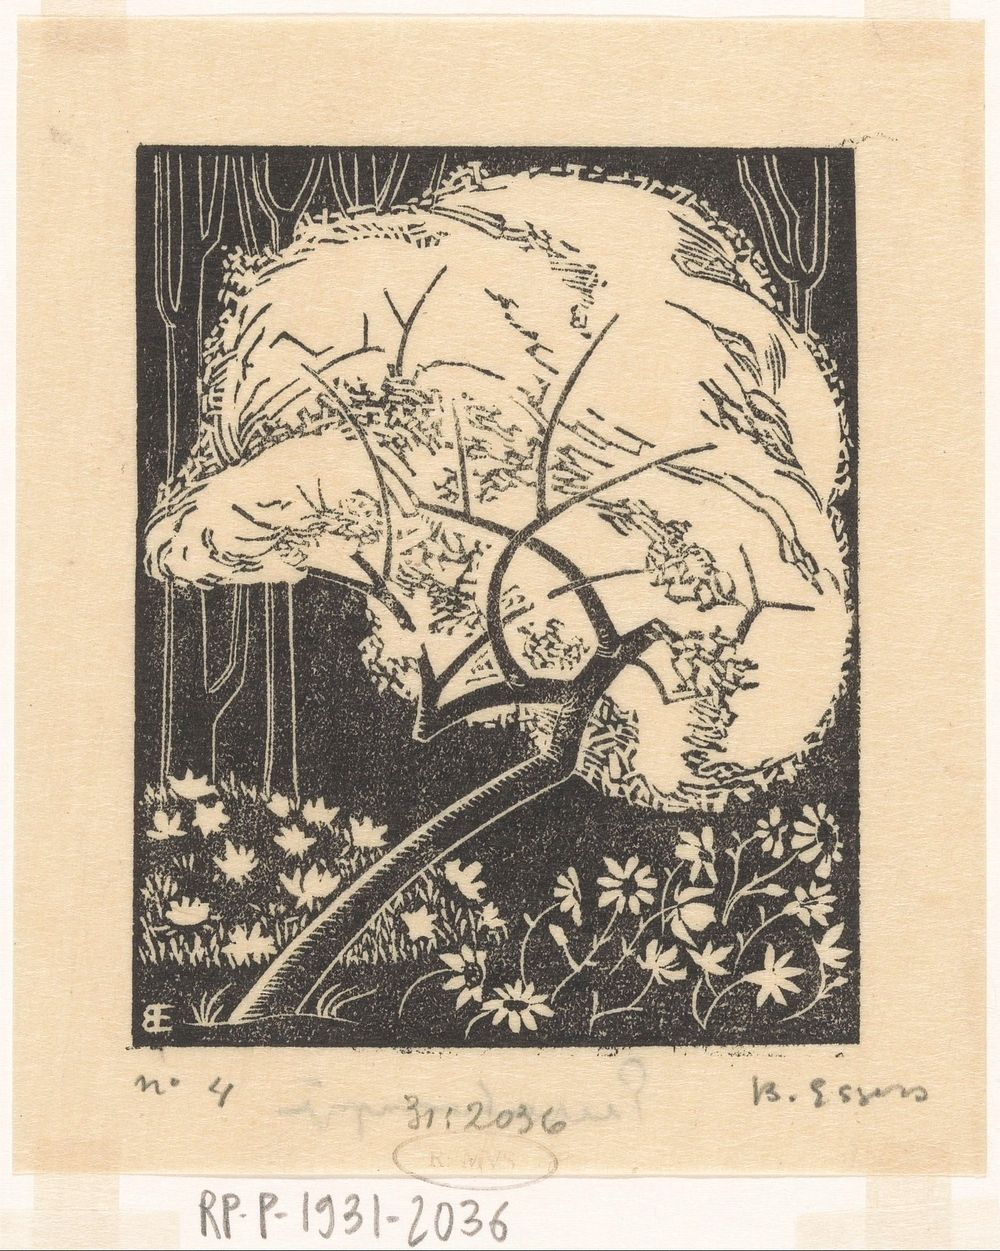 Le cinquième livre des stances (1927) by Bernard Essers